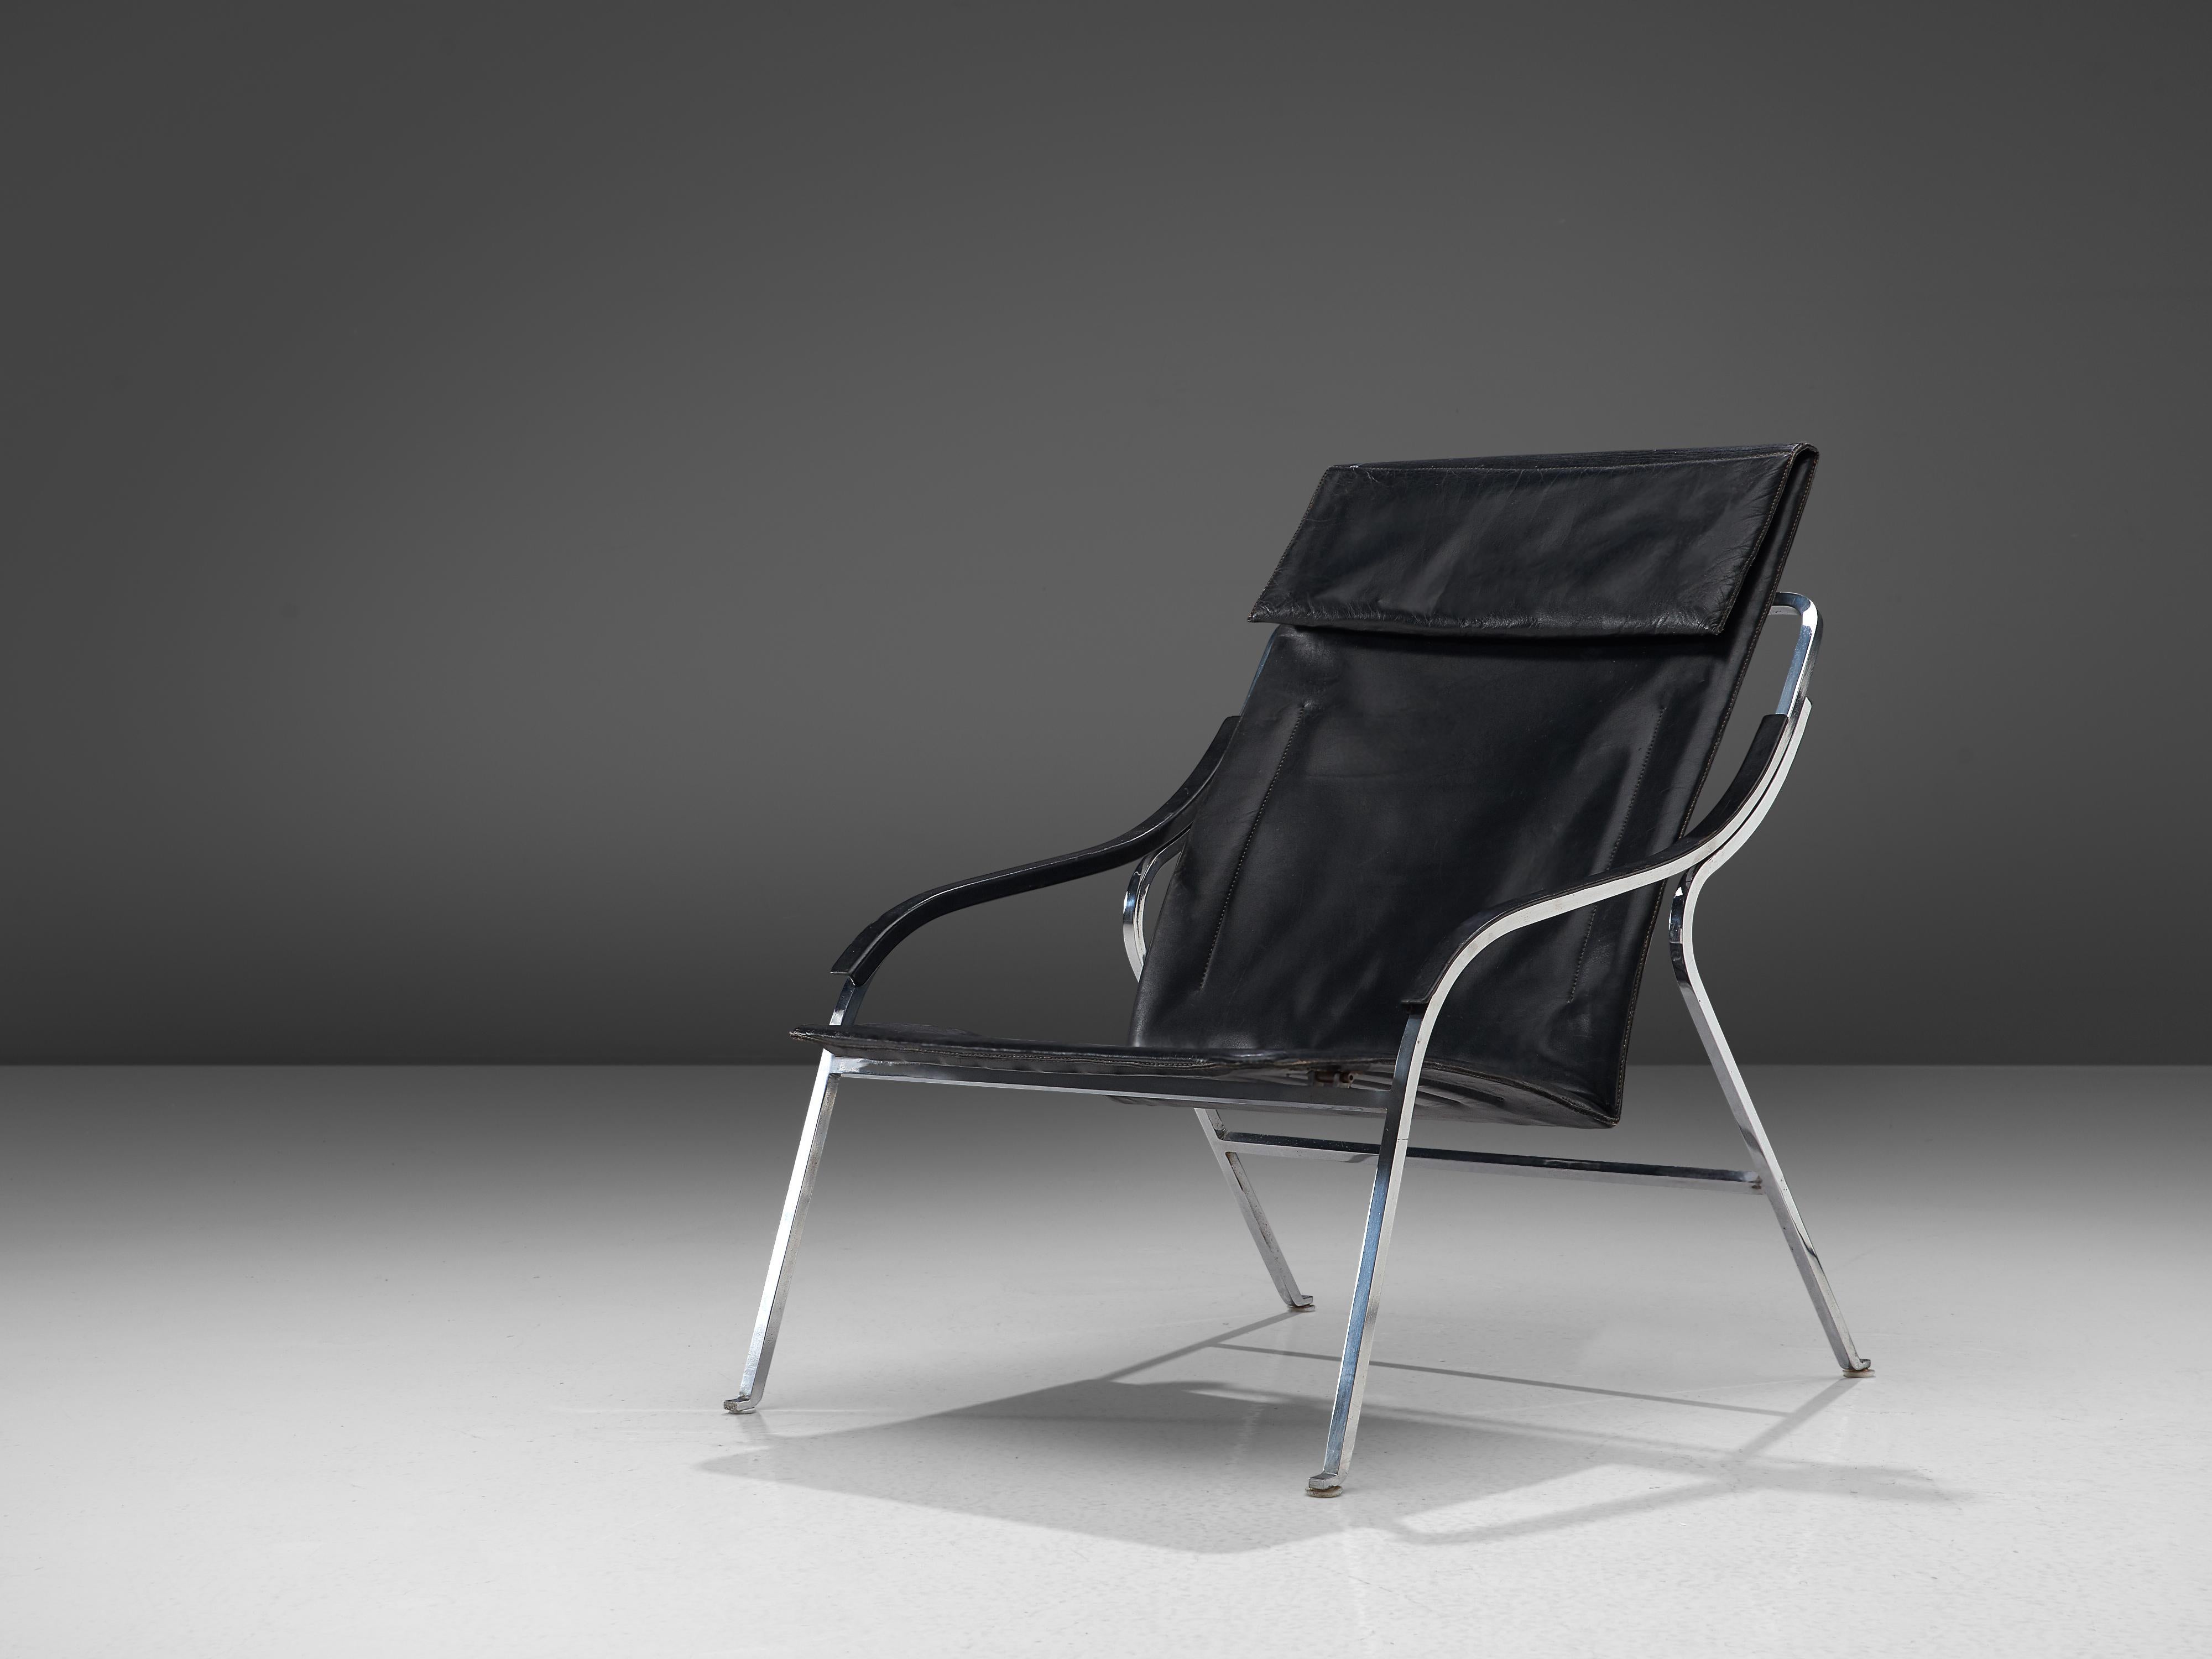 Marco Zanuso für Arflex, Loungesessel, schwarzes Leder, Stahl, Italien, 1964

Dieser Loungesessel von Zanuso gehört zu den besten Beispielen für Sessel, die der Architekt entworfen hat. Es ist nicht nur das raffinierte, schlanke Design, das ihn